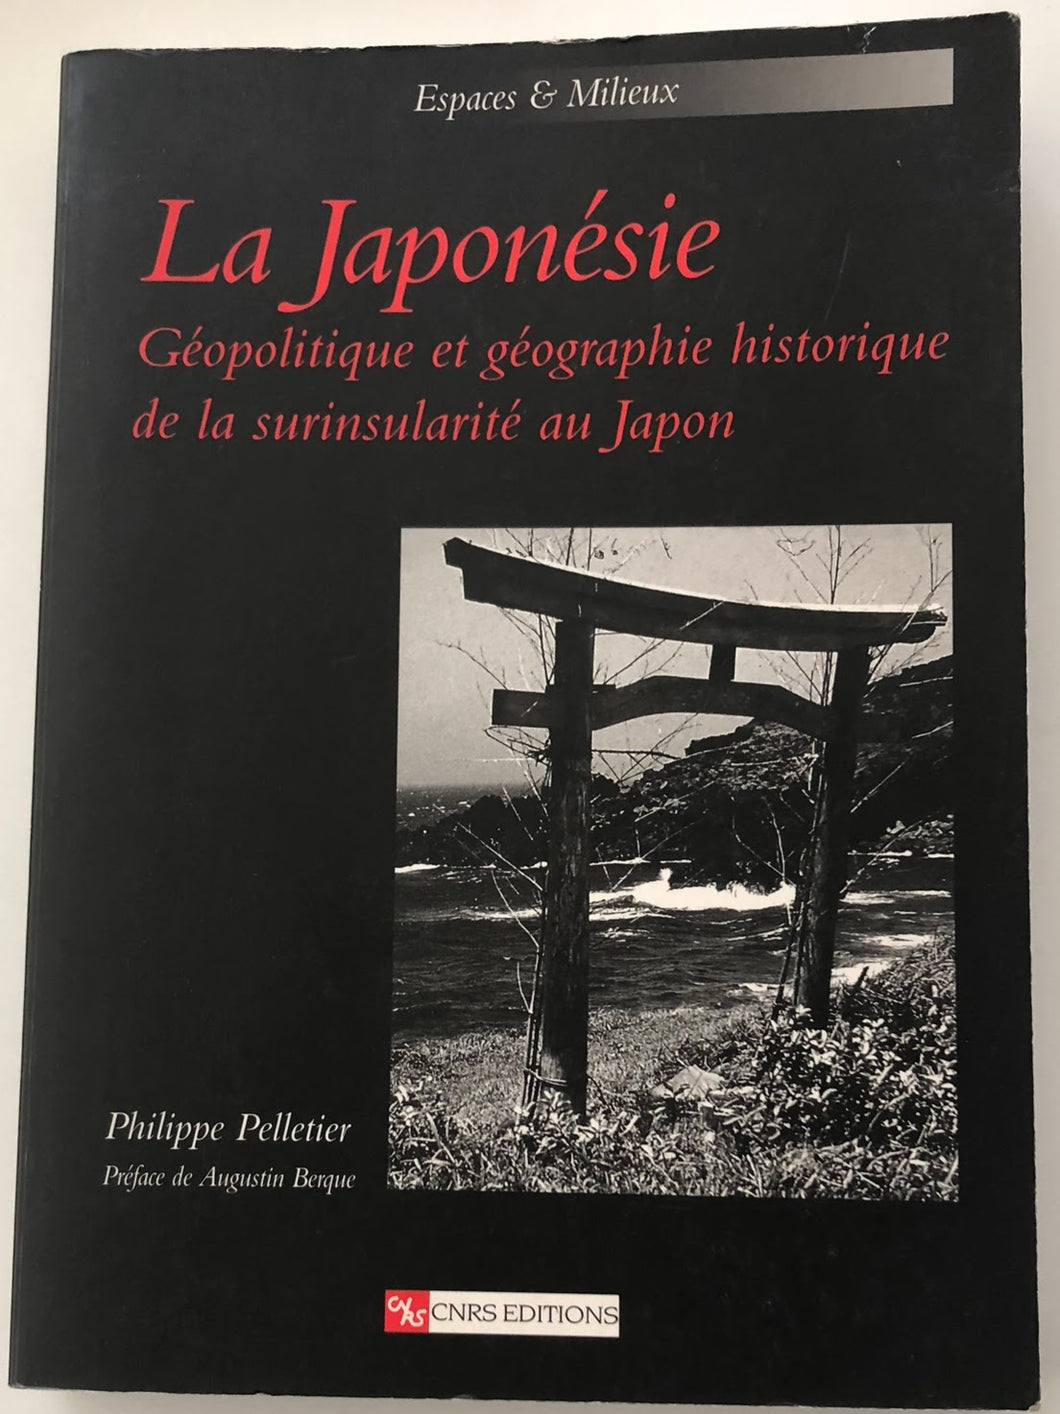 La japonésie : Philippe Pelletier